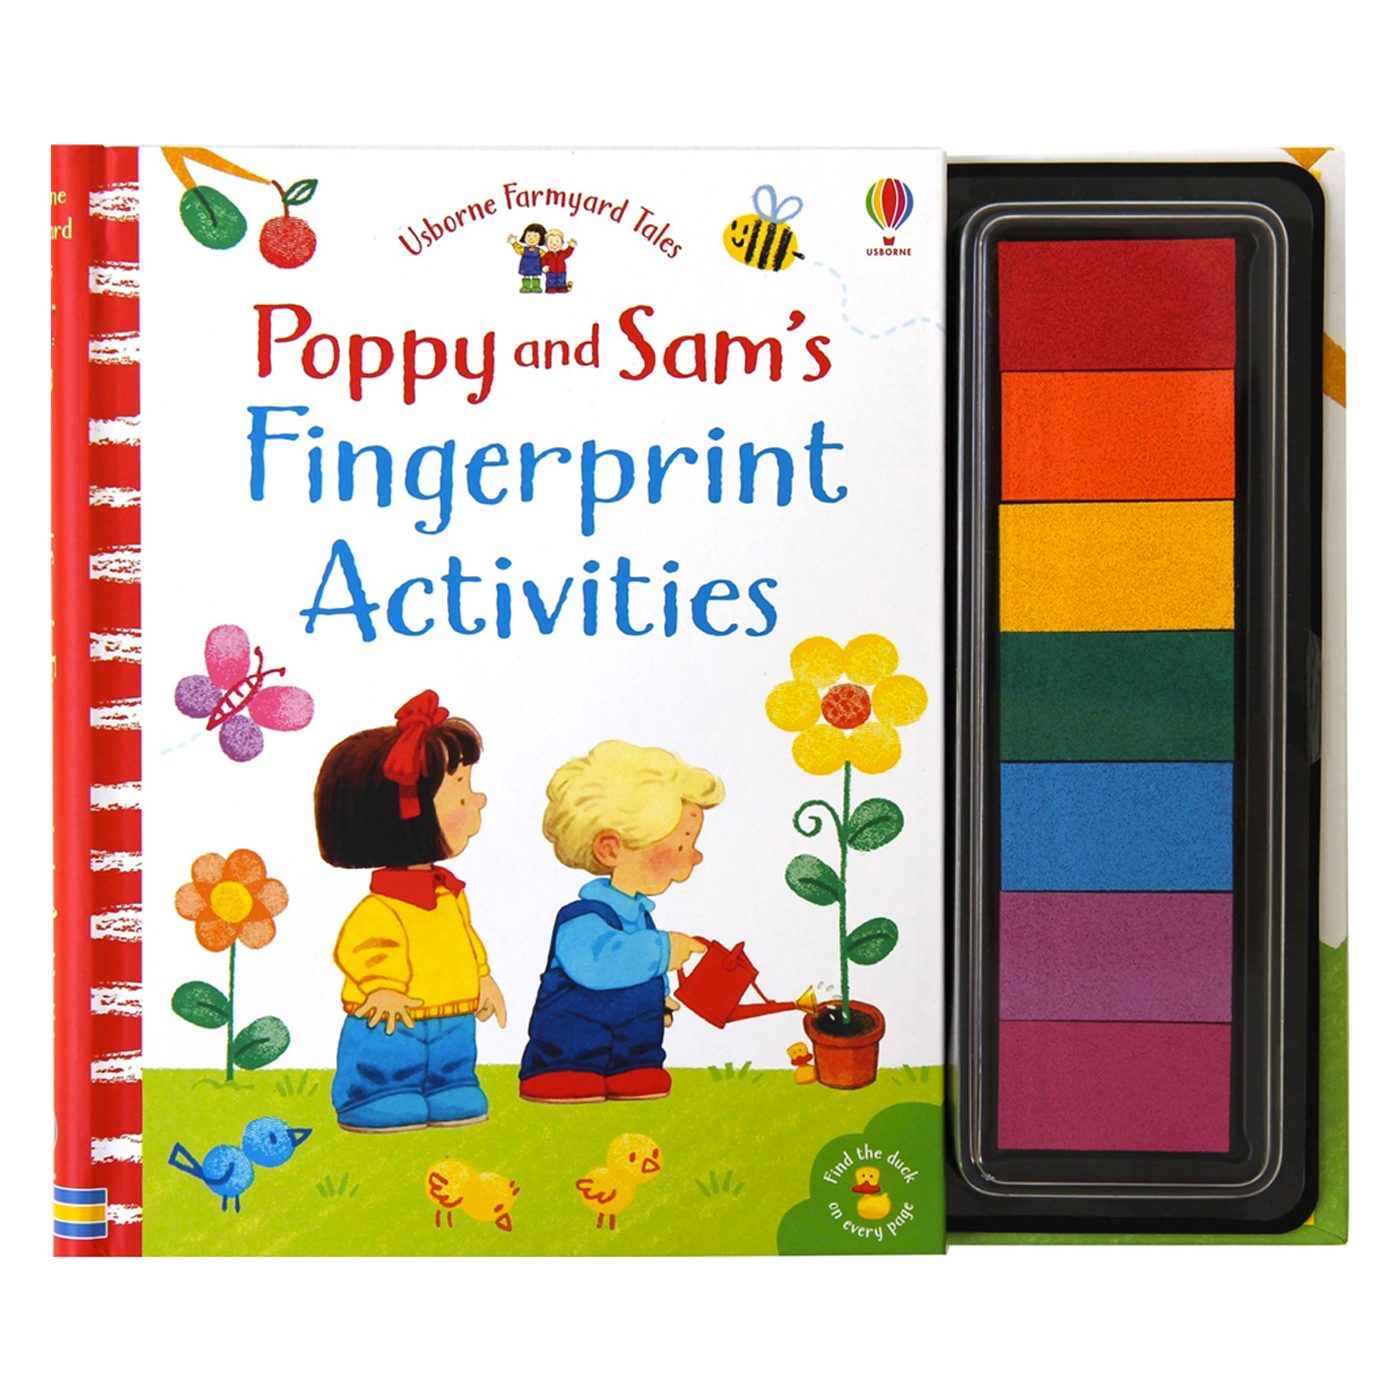 USBORNE Poppy and Sam's Fingerprint Activities